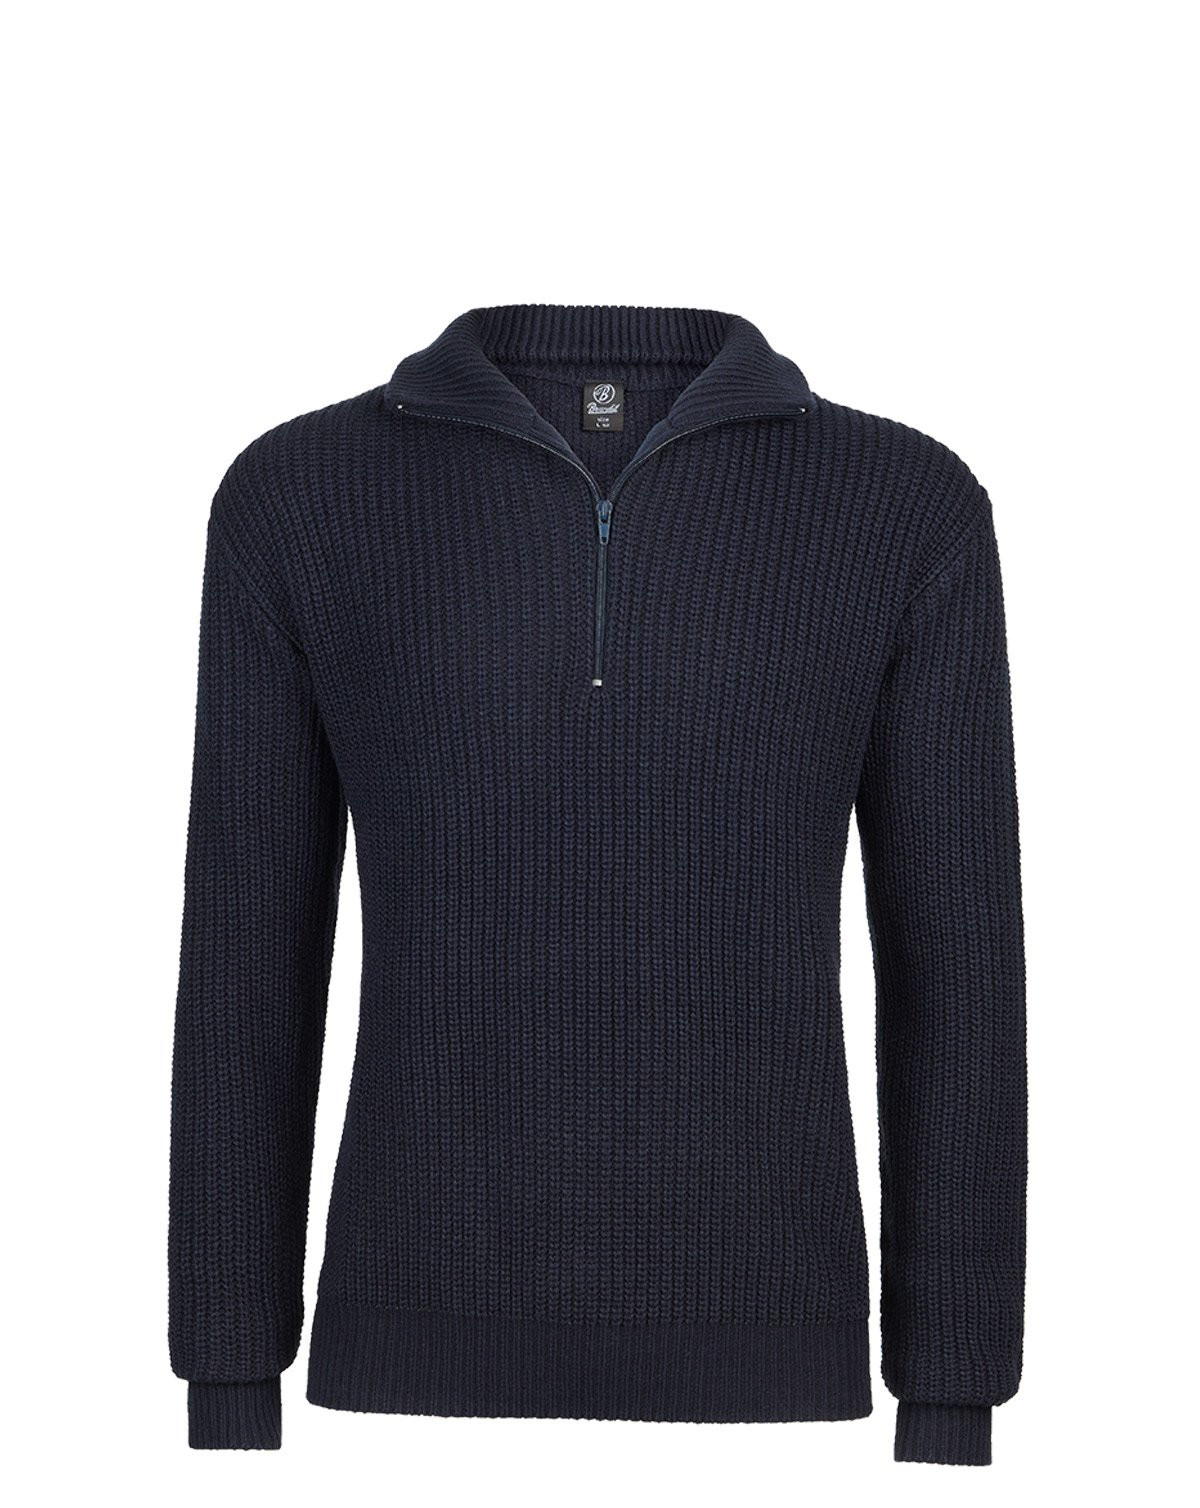 Brandit Marine Pullover Troyer Sweater (Navy, M)